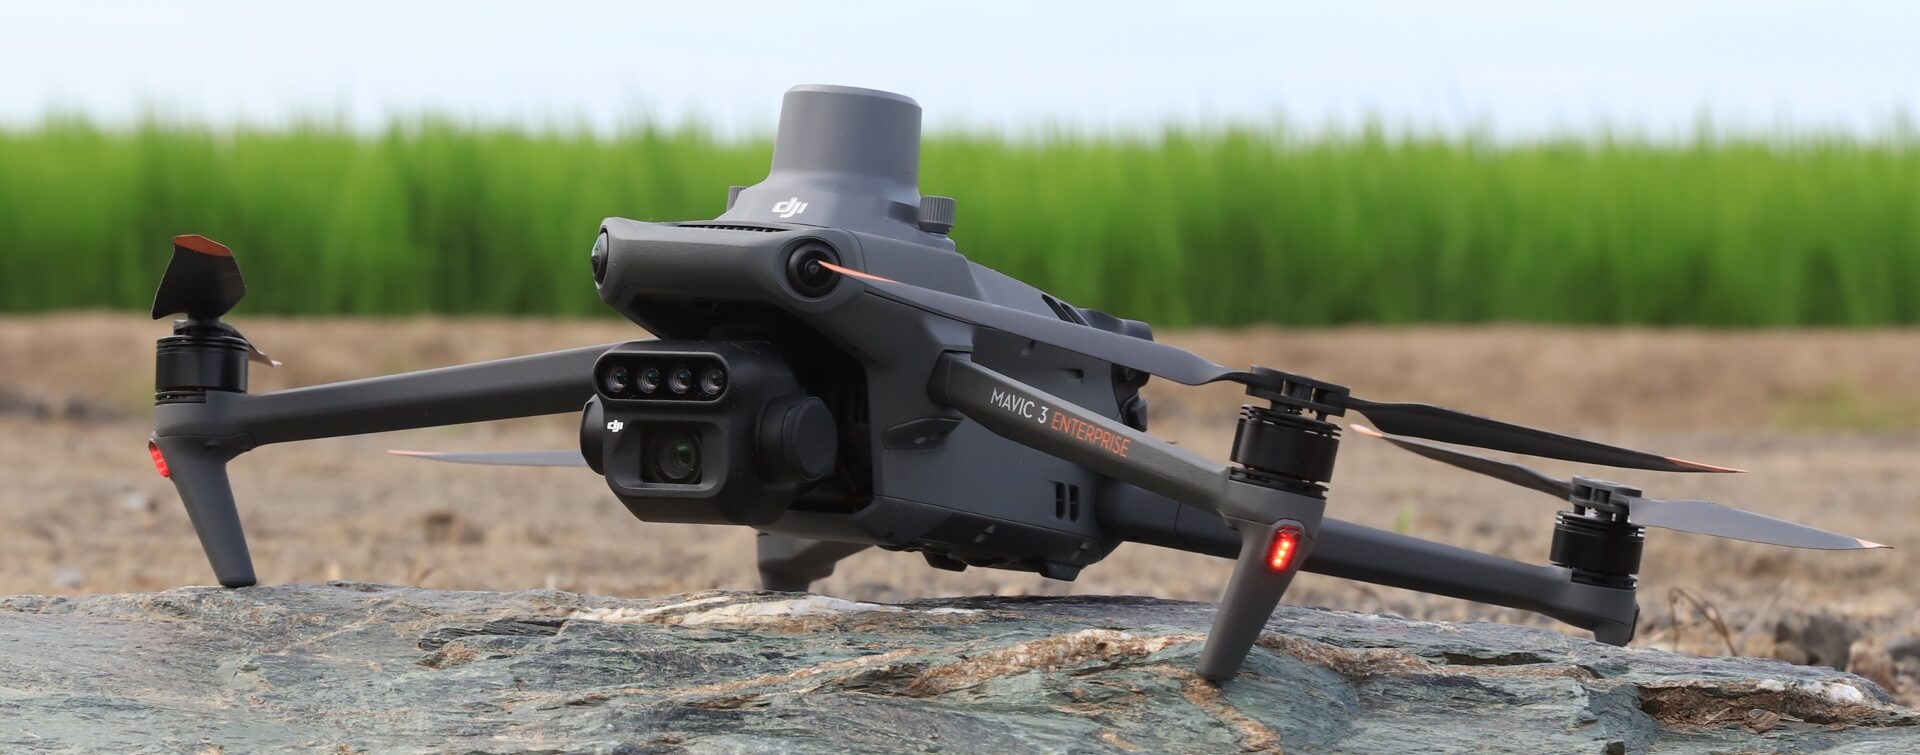 DJI Mavic 3 Multispectral drone